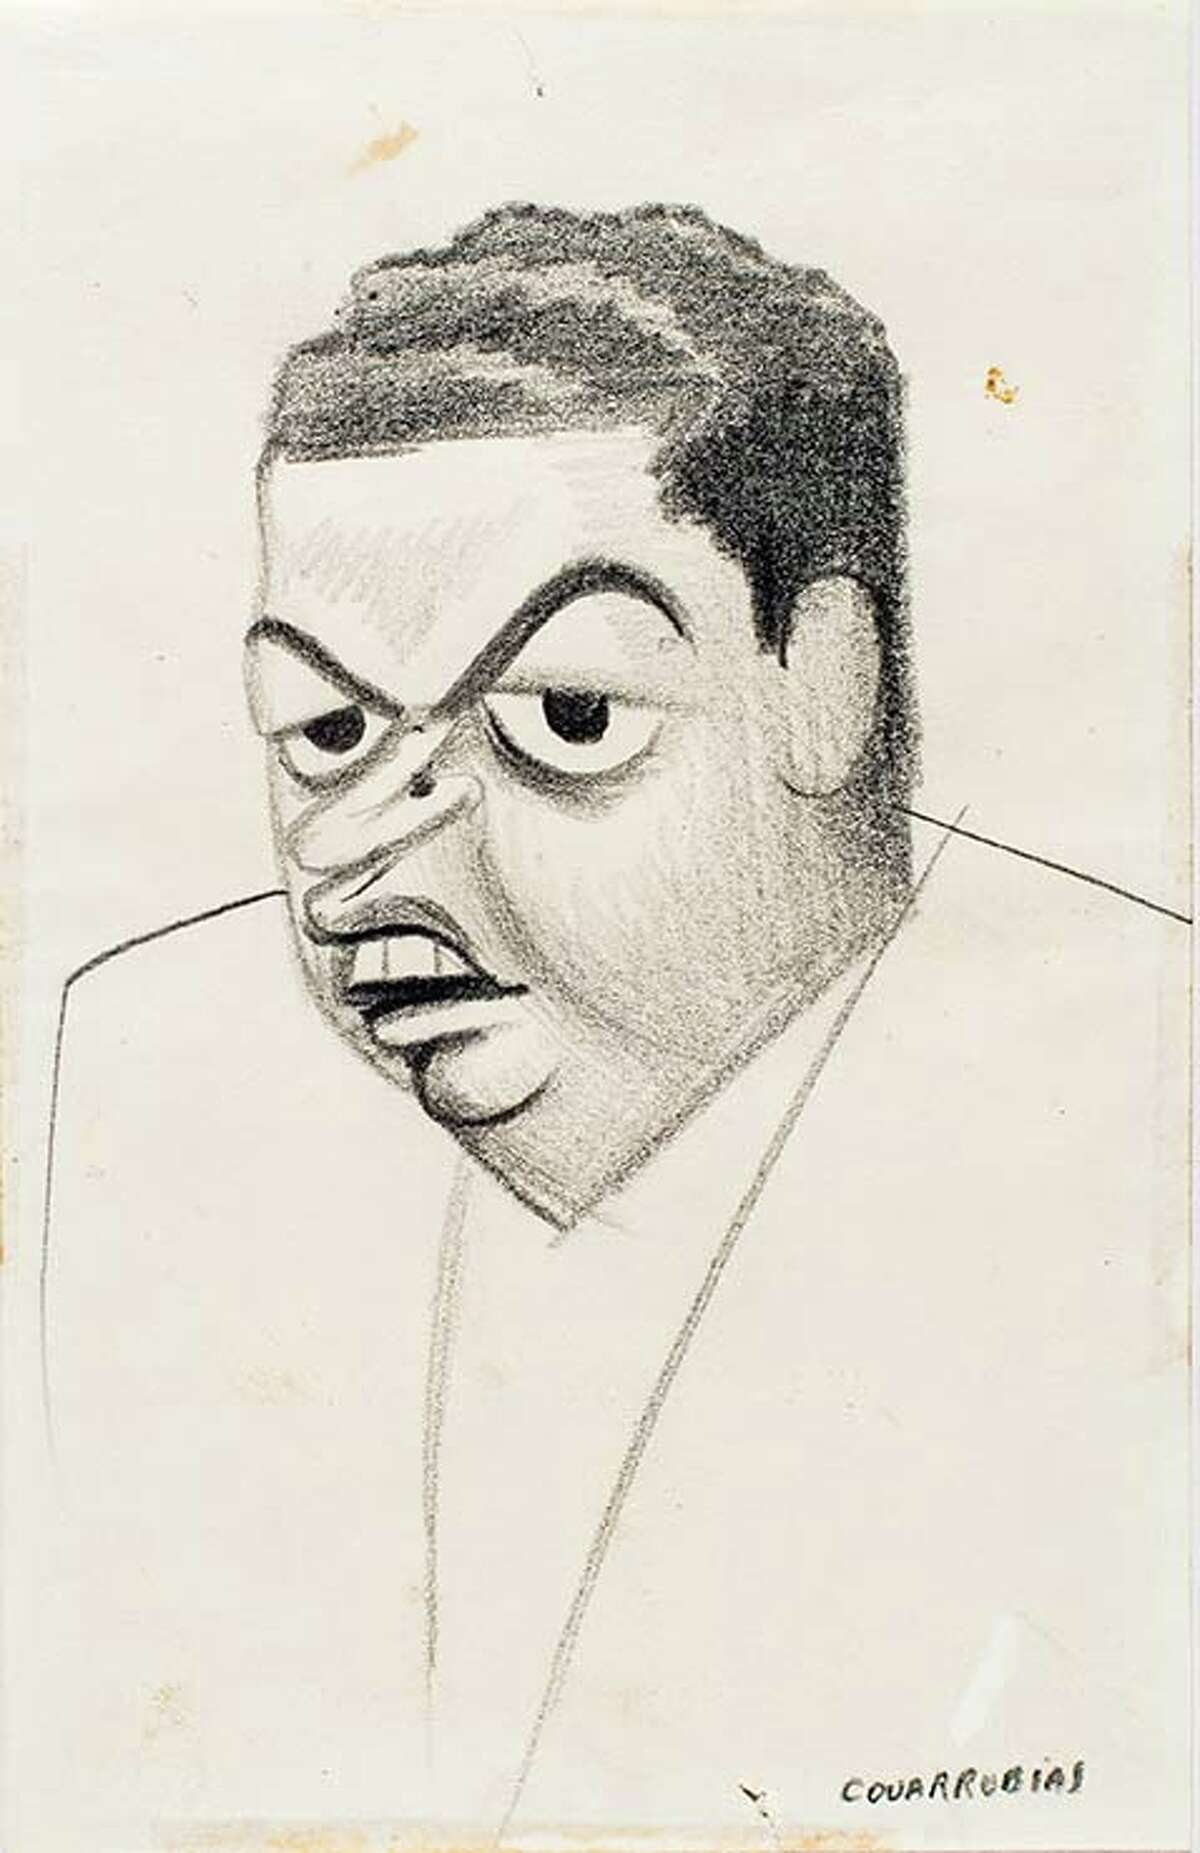 A self-portrait caricature by Miguel Covarrubias.